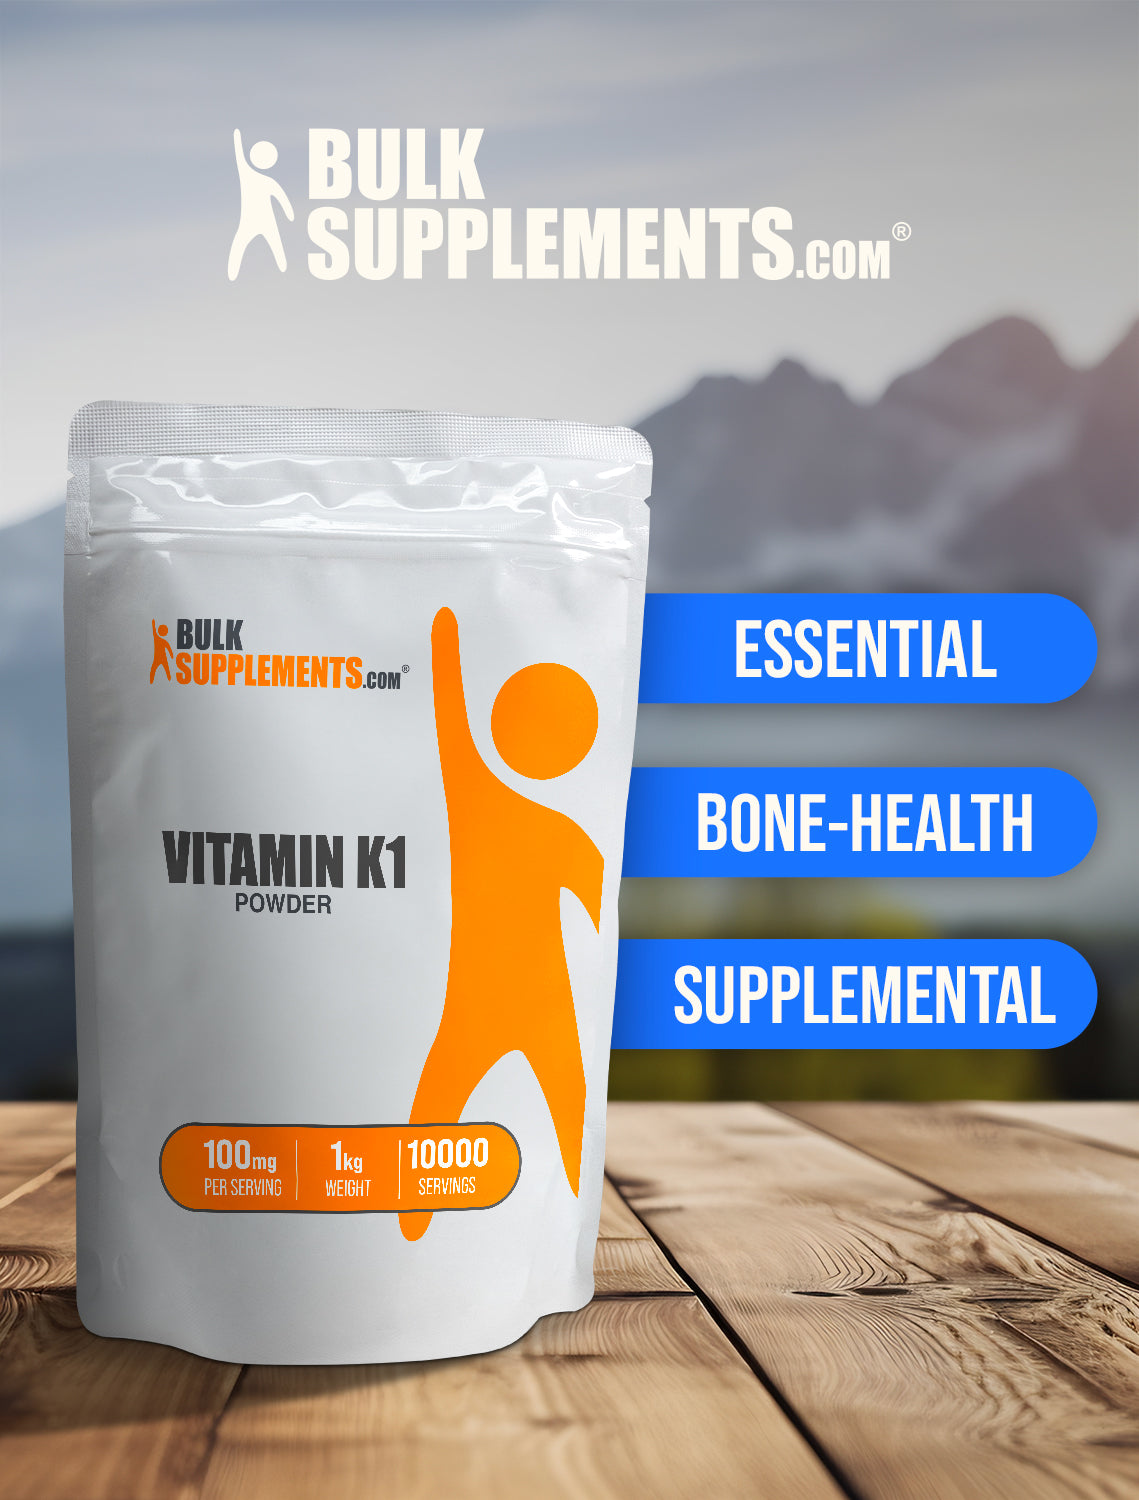 Vitamin K1 powder keyword image 1kg